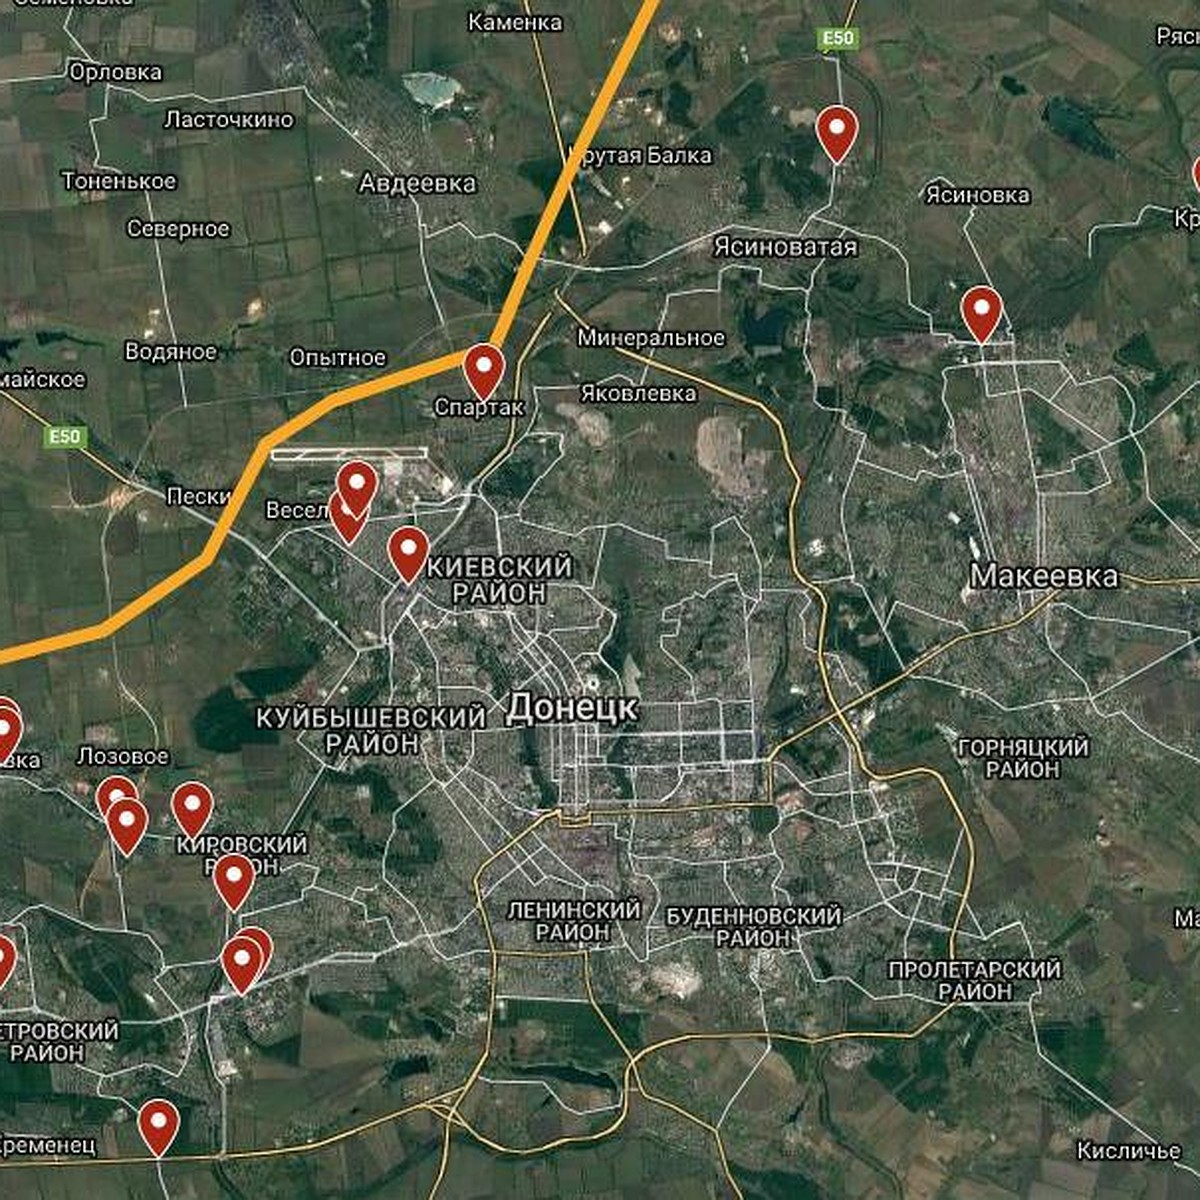 Связь МТС в ДНР: В Сети появилась карта с местами, откуда можно позвонитьна Водафон - KP.RU